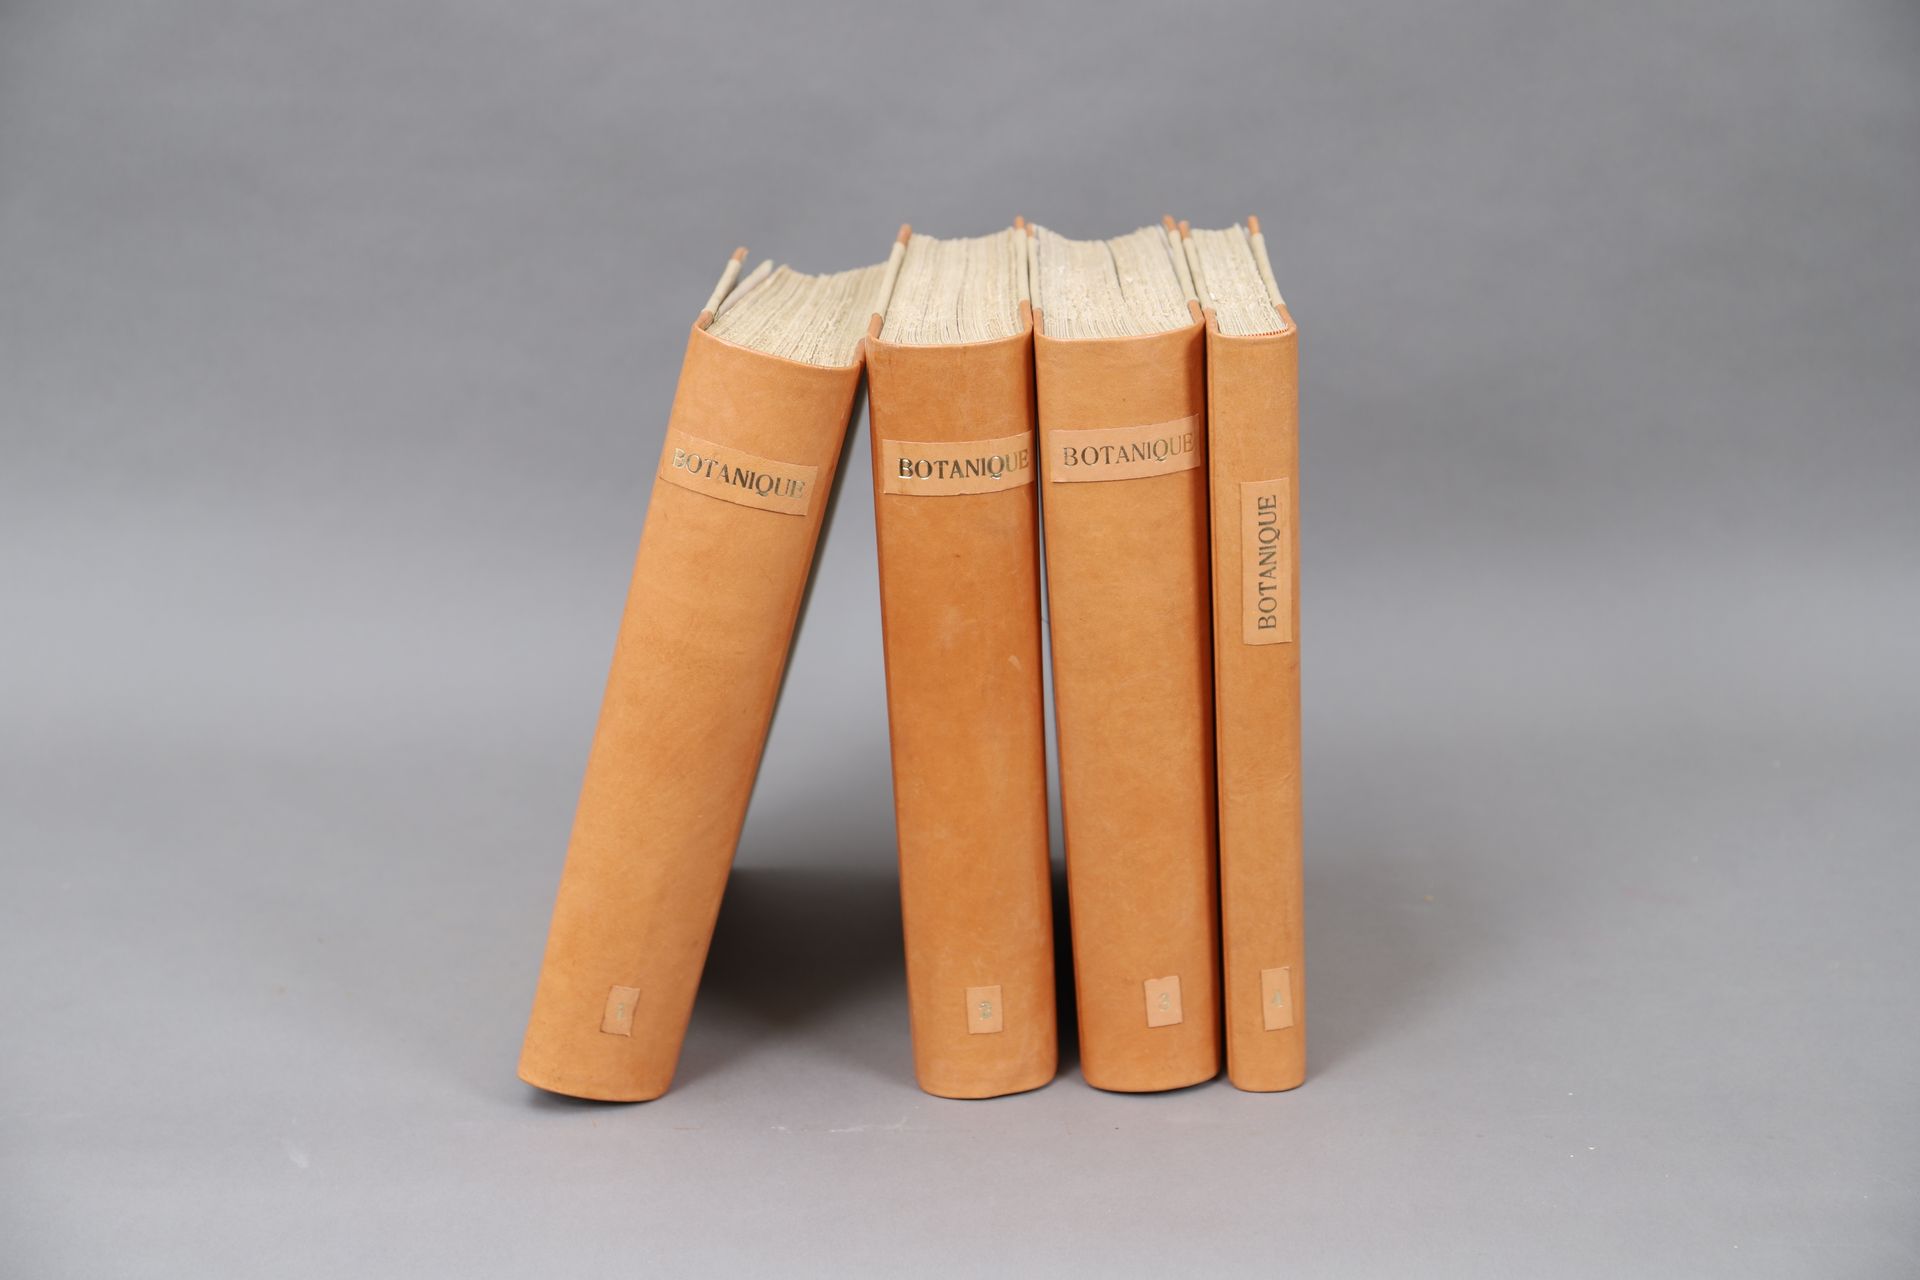 Null DIZIONARIO DI BOTANICA di H. BAILLON

Parigi Hachette 1876

4 volumi.